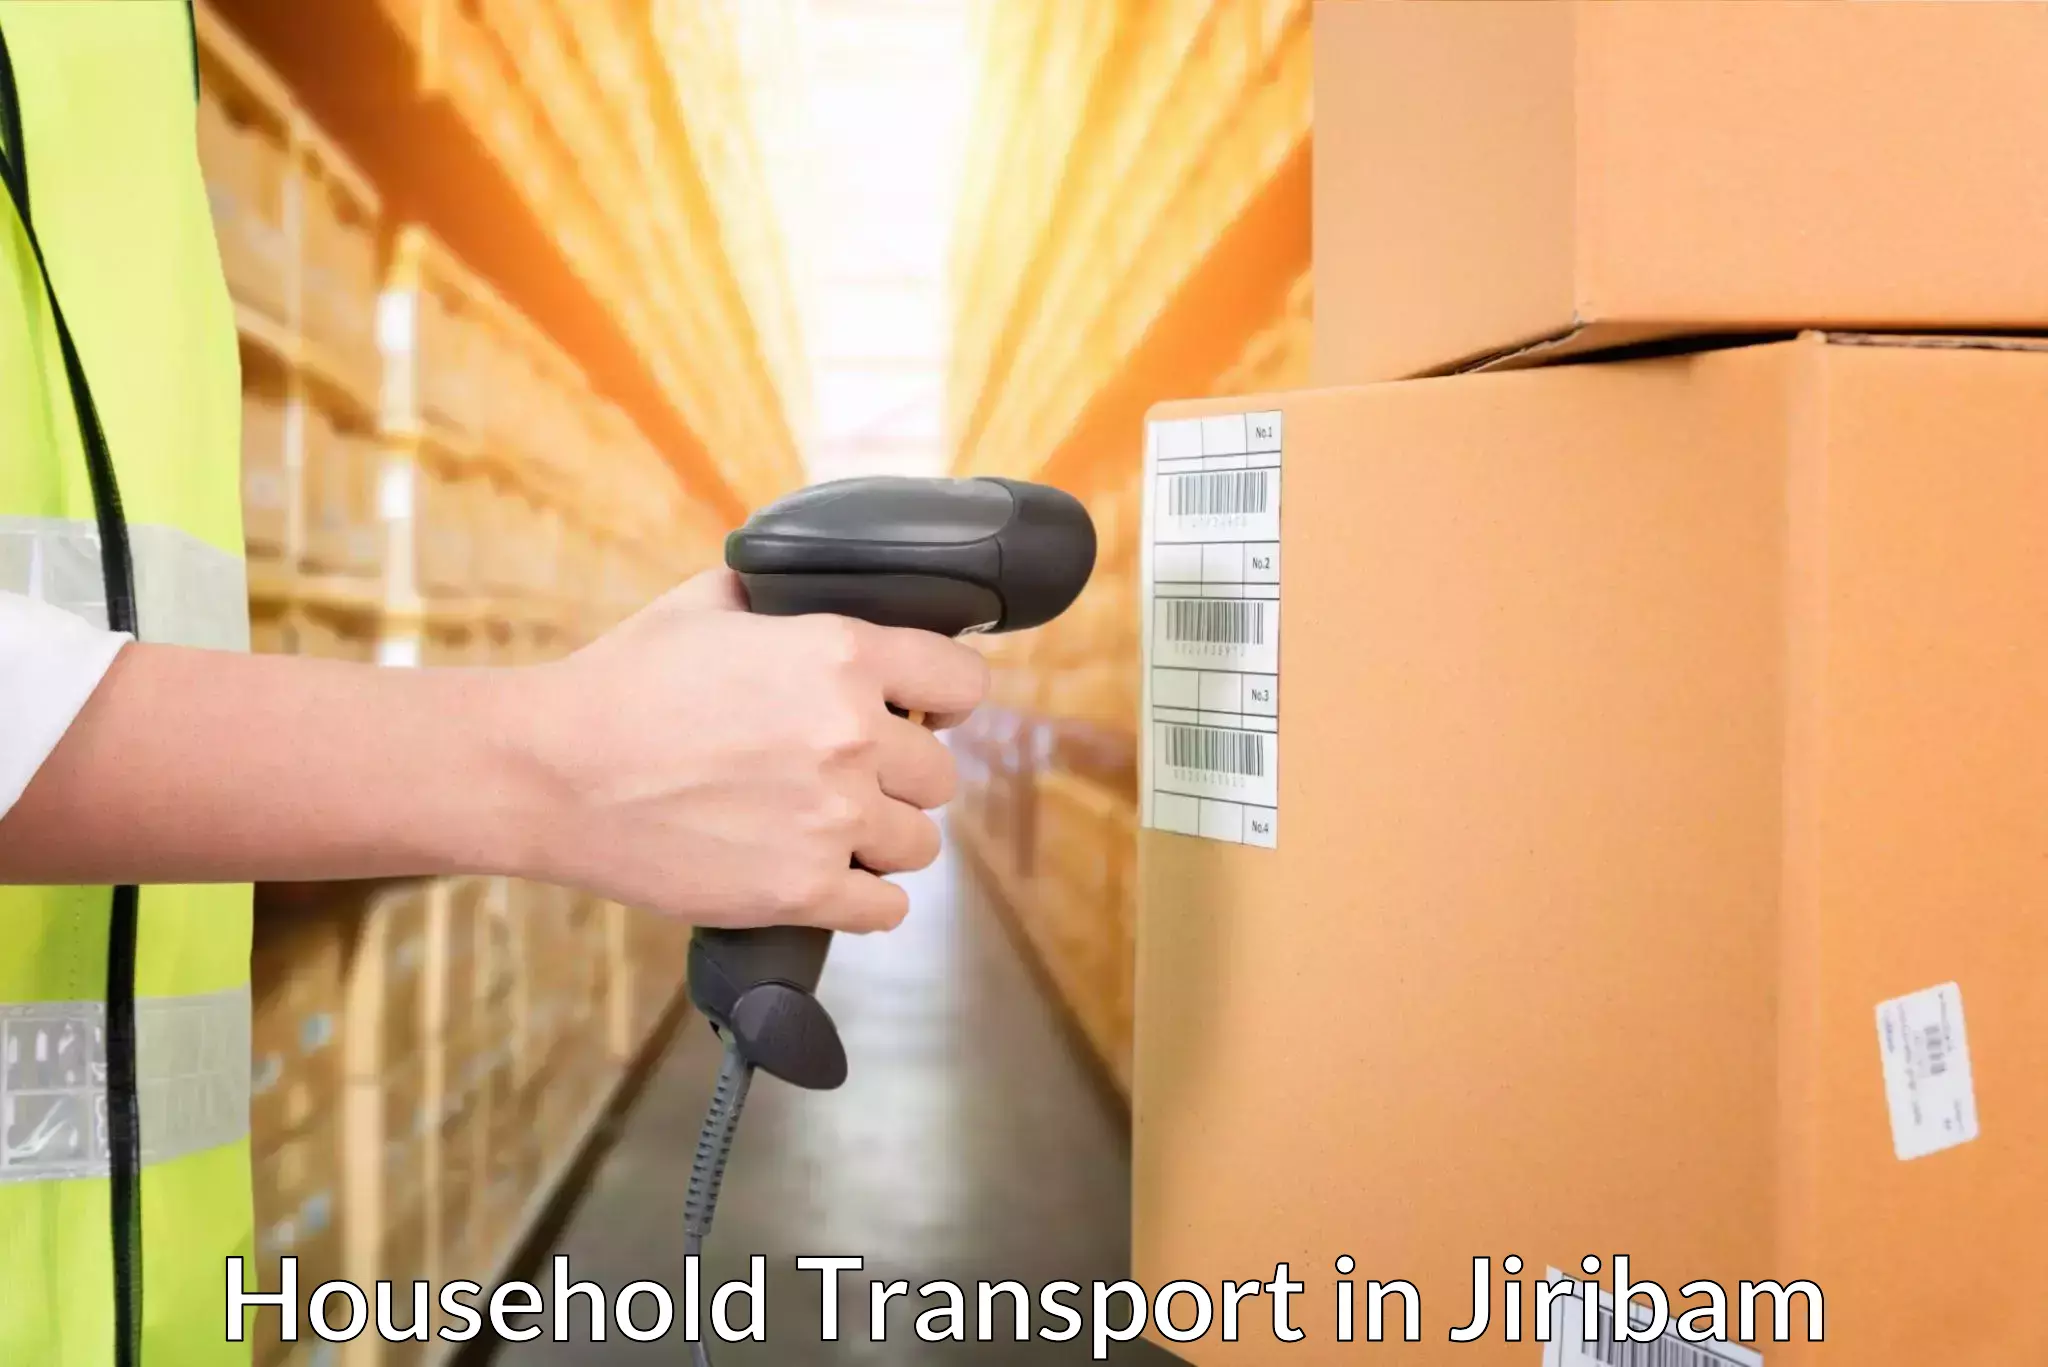 Household transport solutions in Jiribam